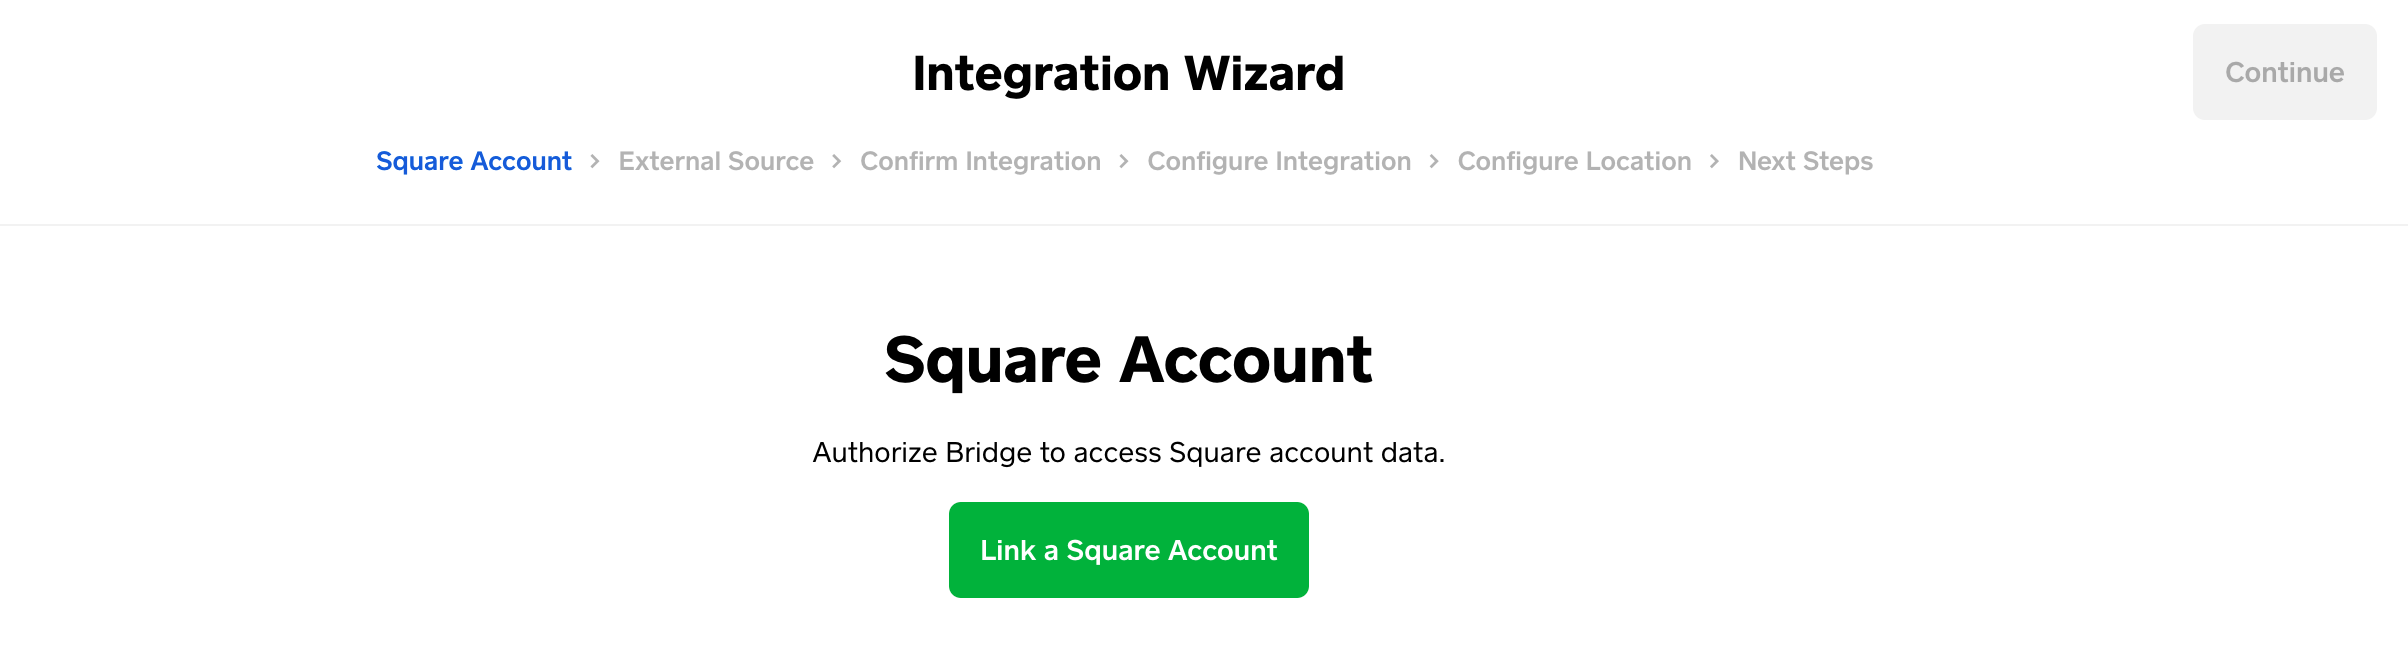 square-bridge-wizard-page one-square-account